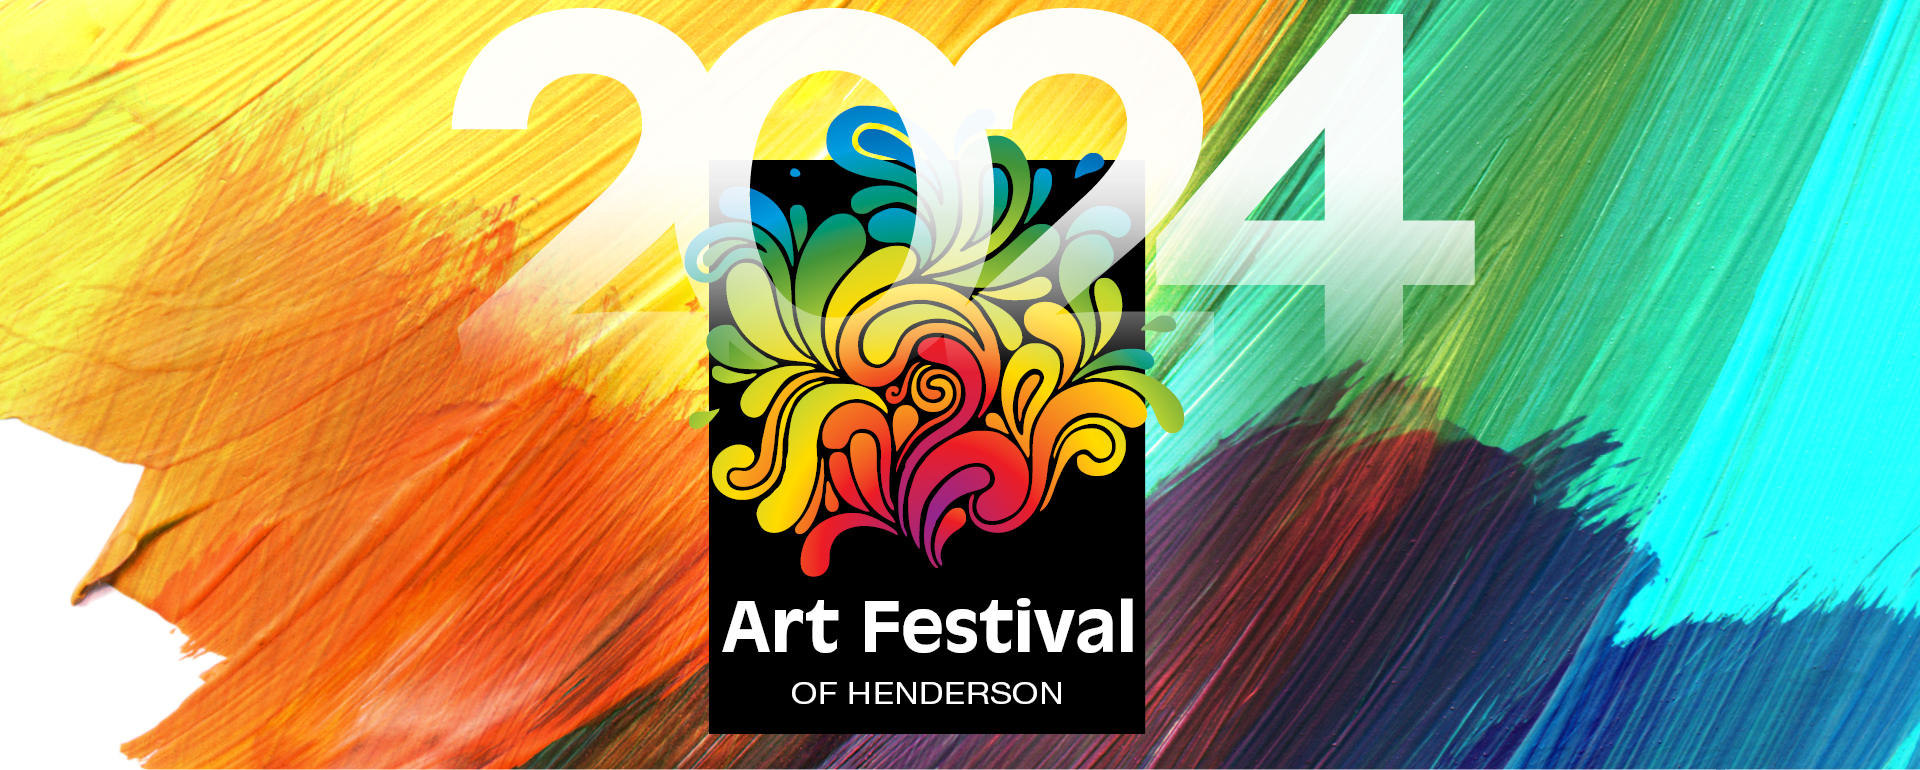 Art Festival Web Banner 1920x770